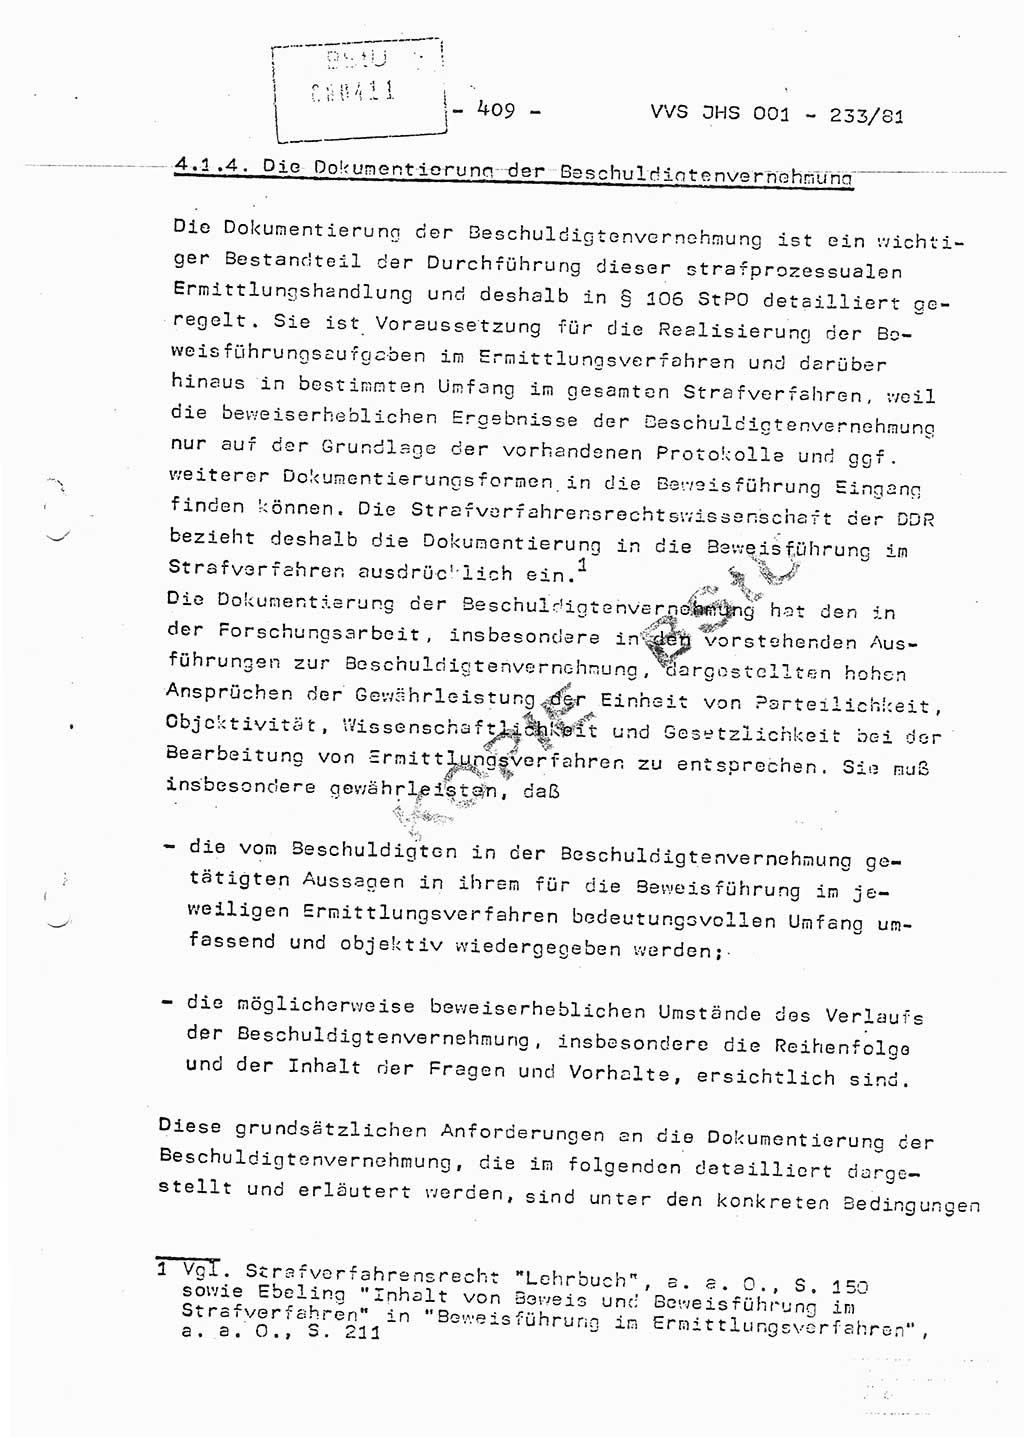 Dissertation Oberstleutnant Horst Zank (JHS), Oberstleutnant Dr. Karl-Heinz Knoblauch (JHS), Oberstleutnant Gustav-Adolf Kowalewski (HA Ⅸ), Oberstleutnant Wolfgang Plötner (HA Ⅸ), Ministerium für Staatssicherheit (MfS) [Deutsche Demokratische Republik (DDR)], Juristische Hochschule (JHS), Vertrauliche Verschlußsache (VVS) o001-233/81, Potsdam 1981, Blatt 409 (Diss. MfS DDR JHS VVS o001-233/81 1981, Bl. 409)